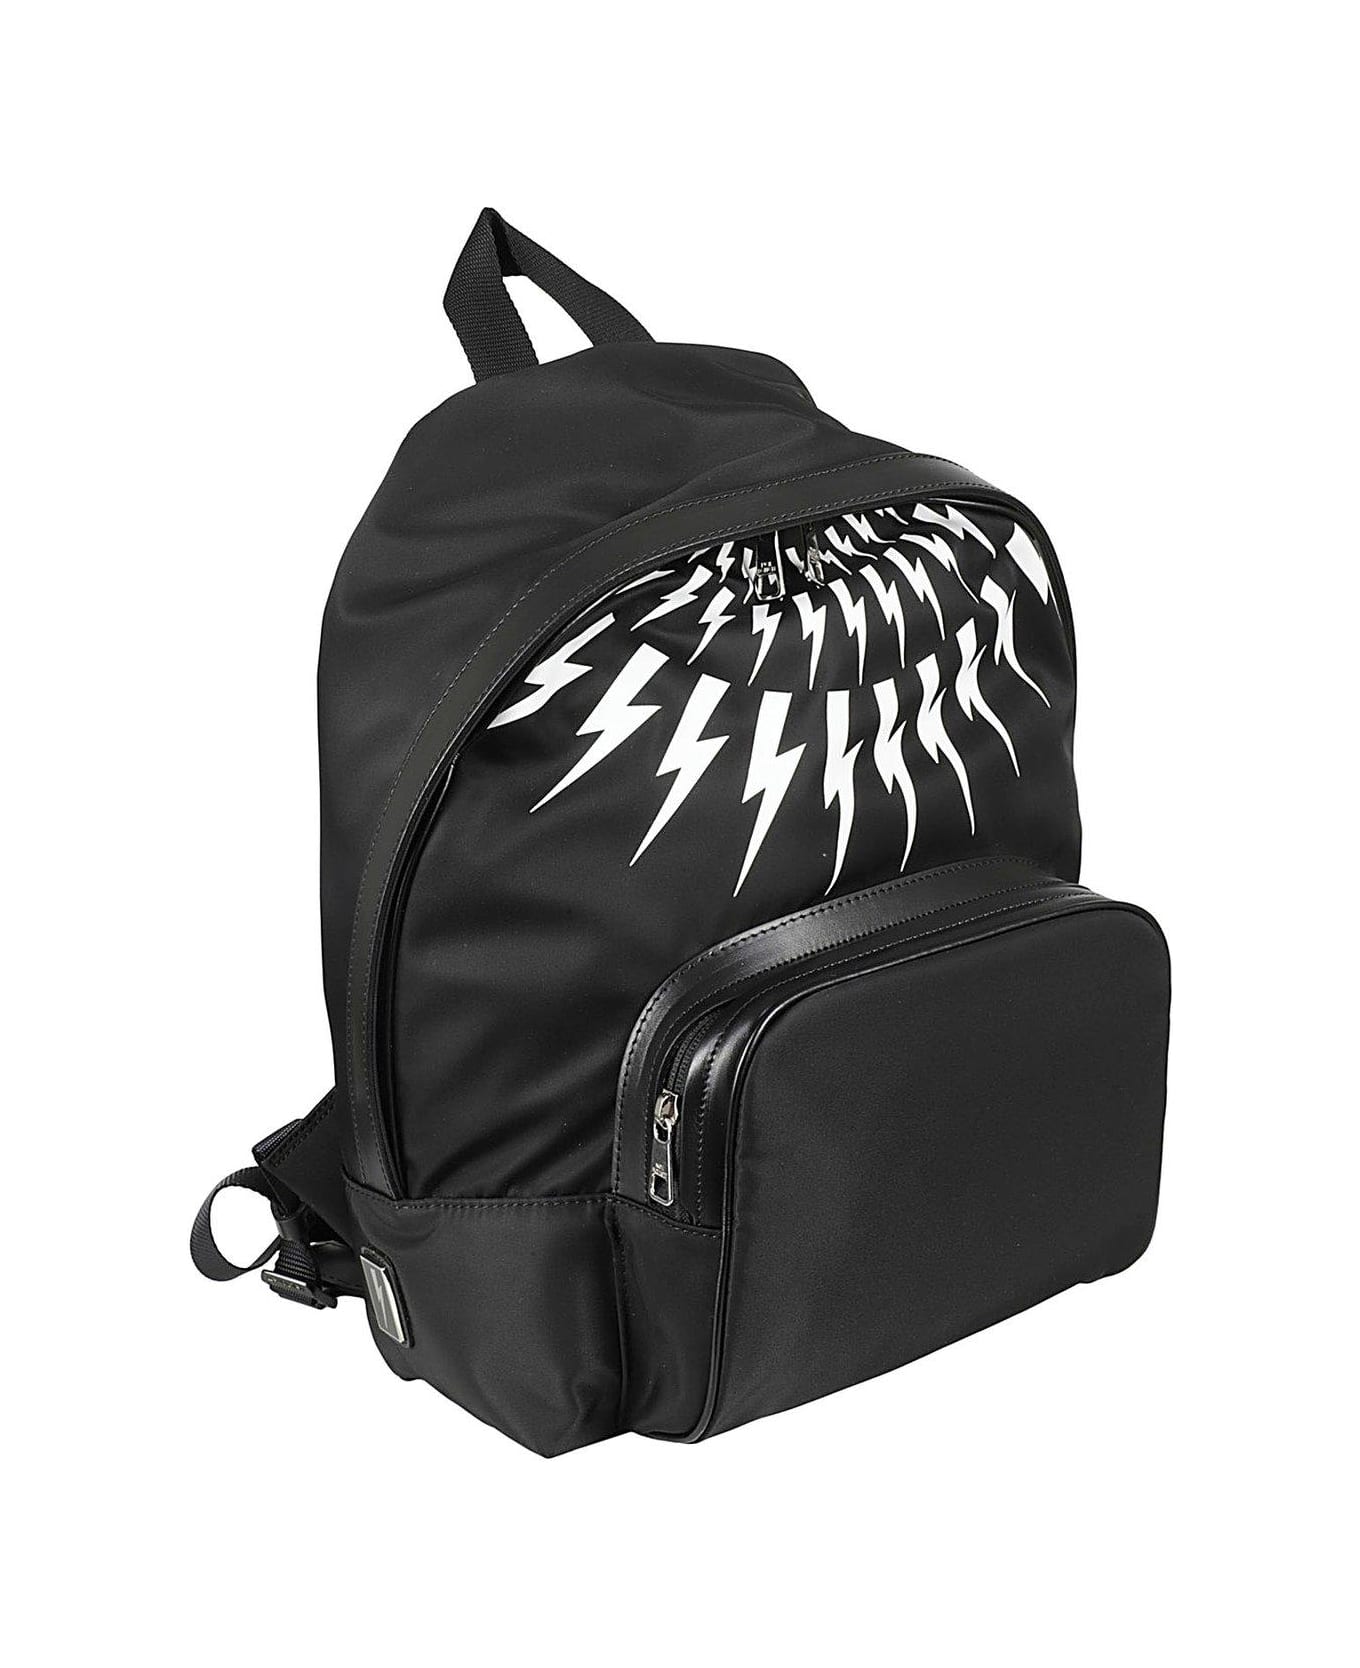 Neil Barrett Thunder Printed Zipped Backpack - Black White